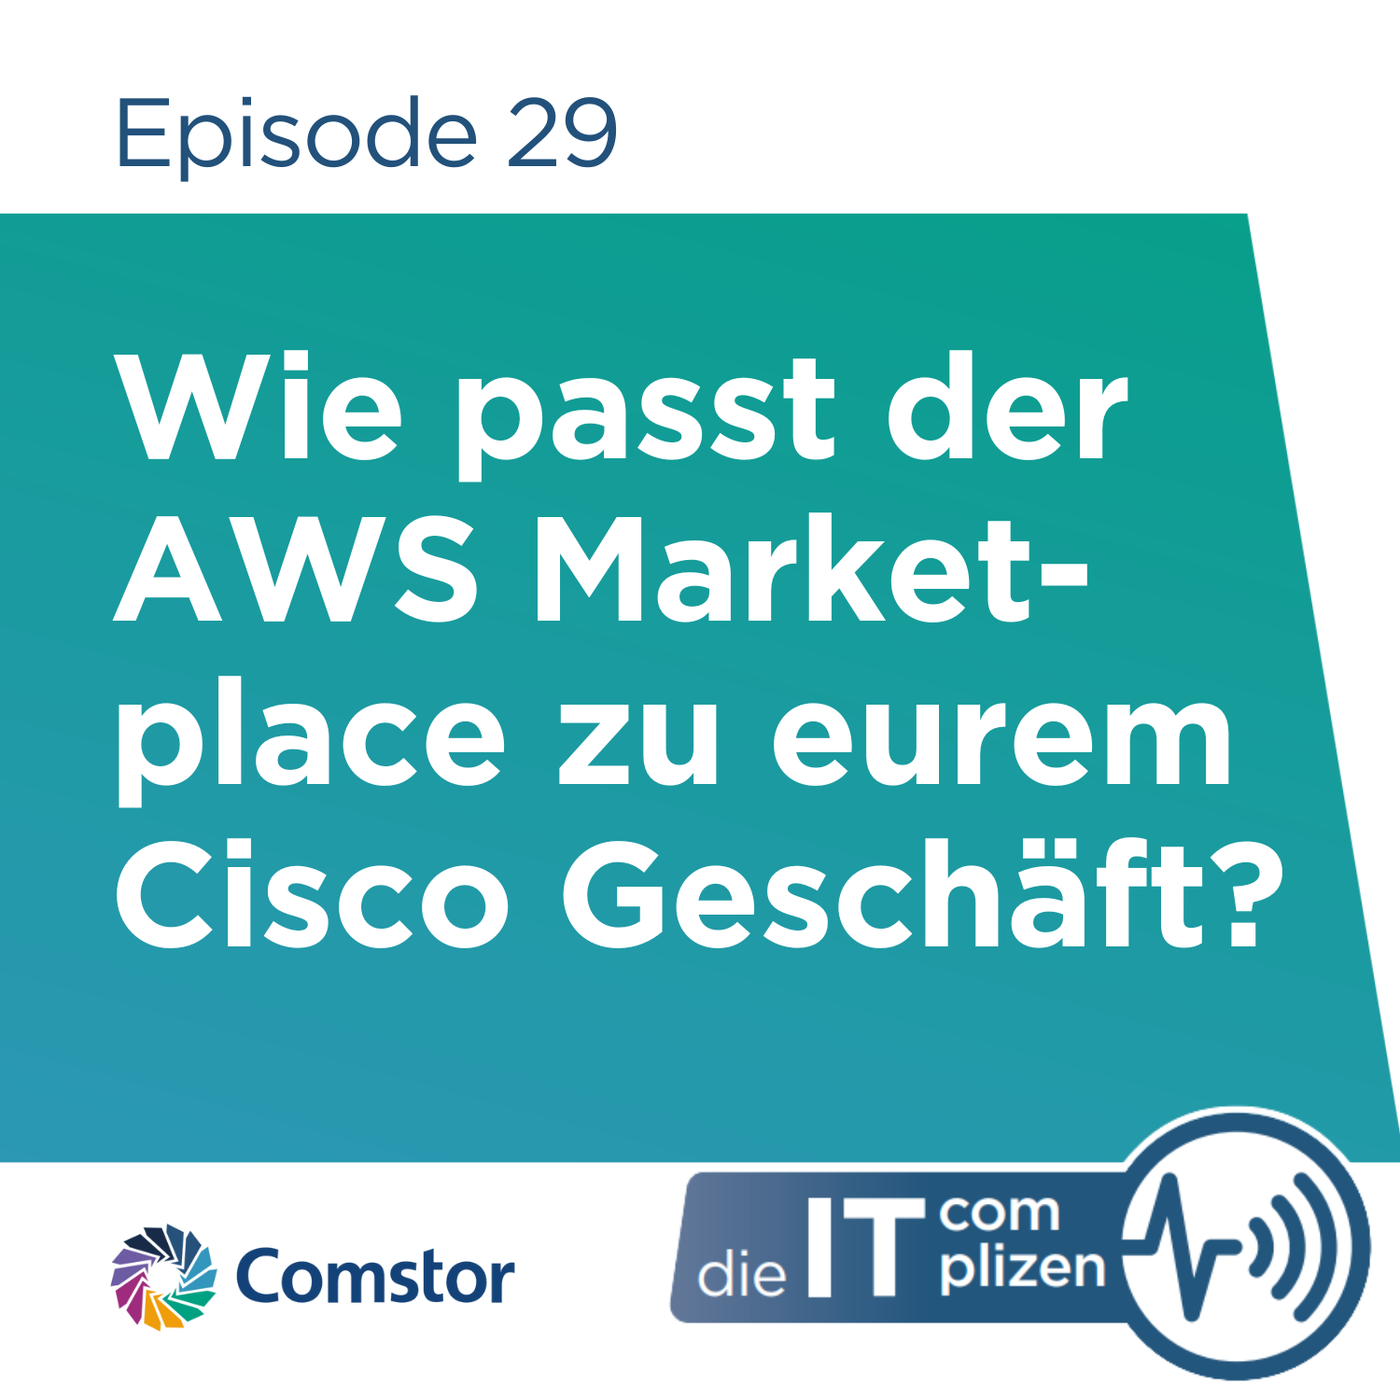 Wie passt der AWS Marketplace zu eurem Cisco Geschäft?